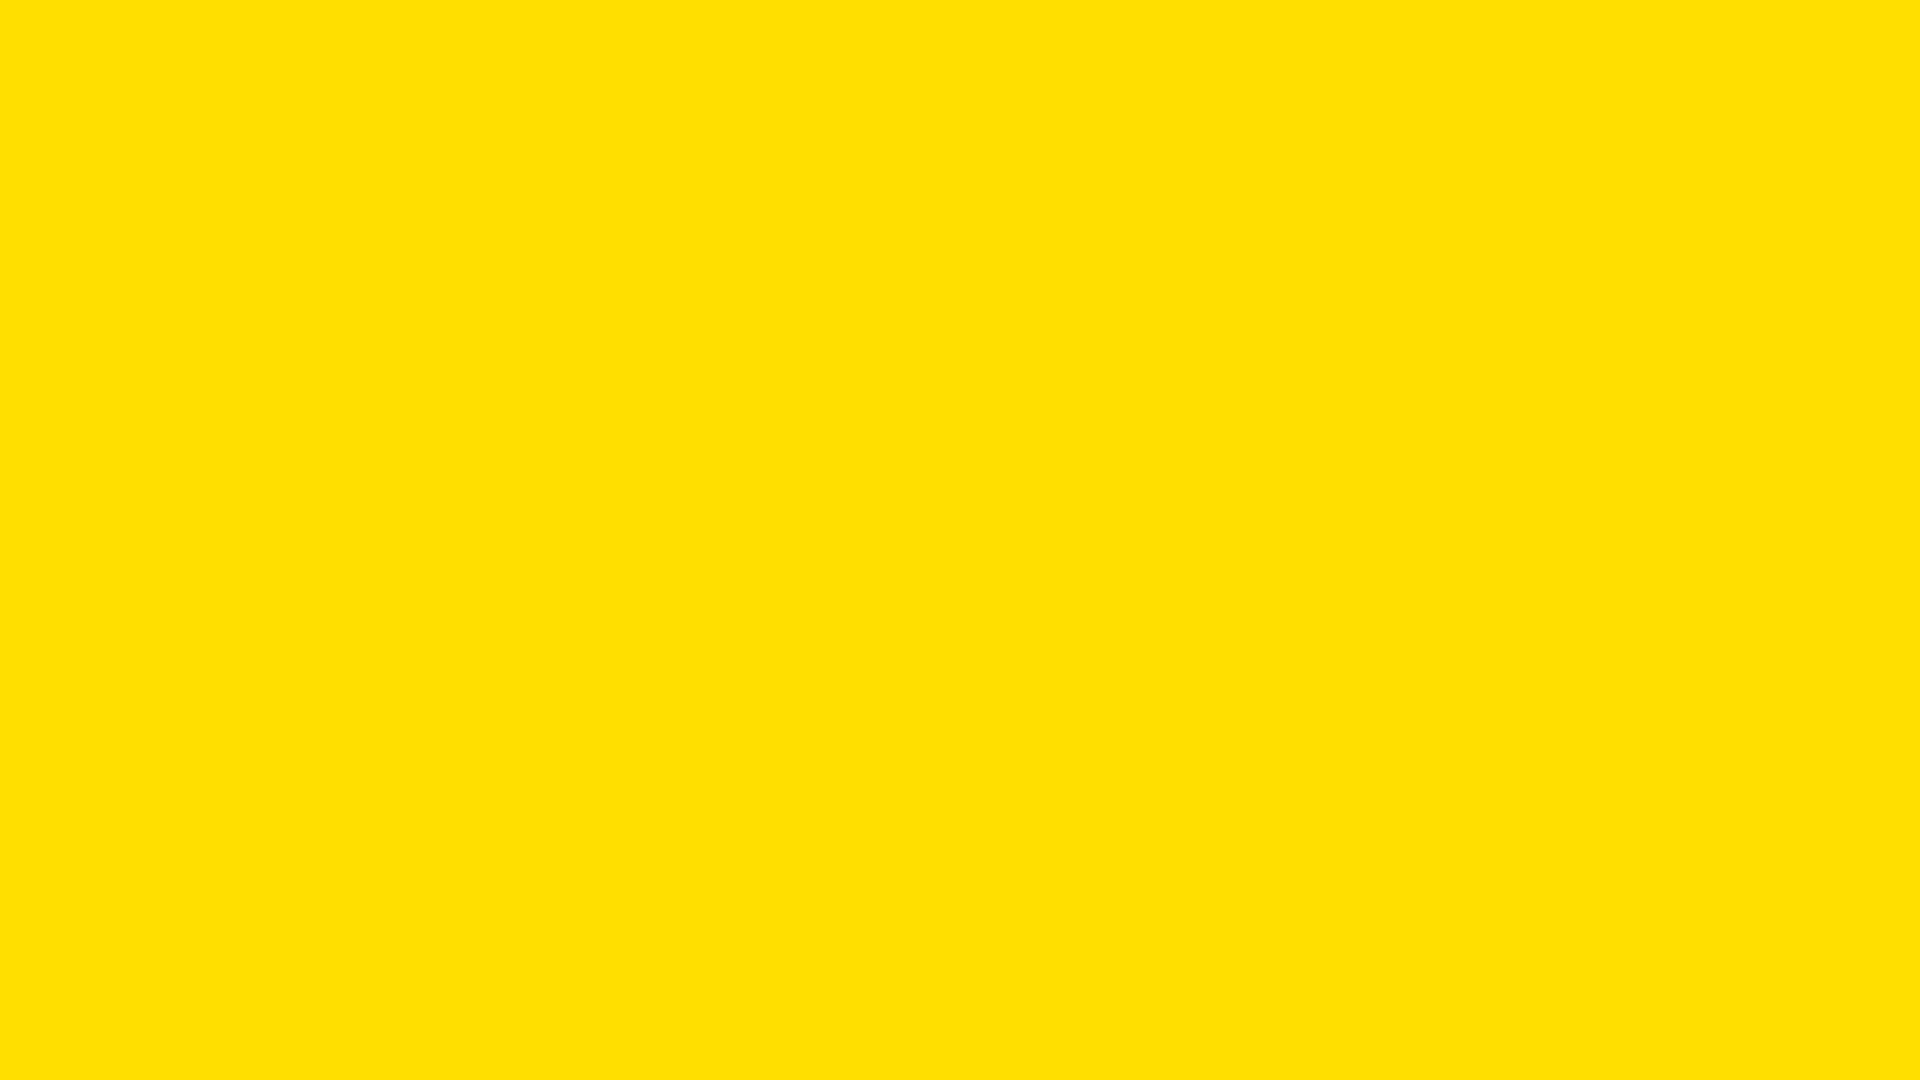 Khi nhìn vào hình nền màu vàng chanh, bạn sẽ tự nhủ \